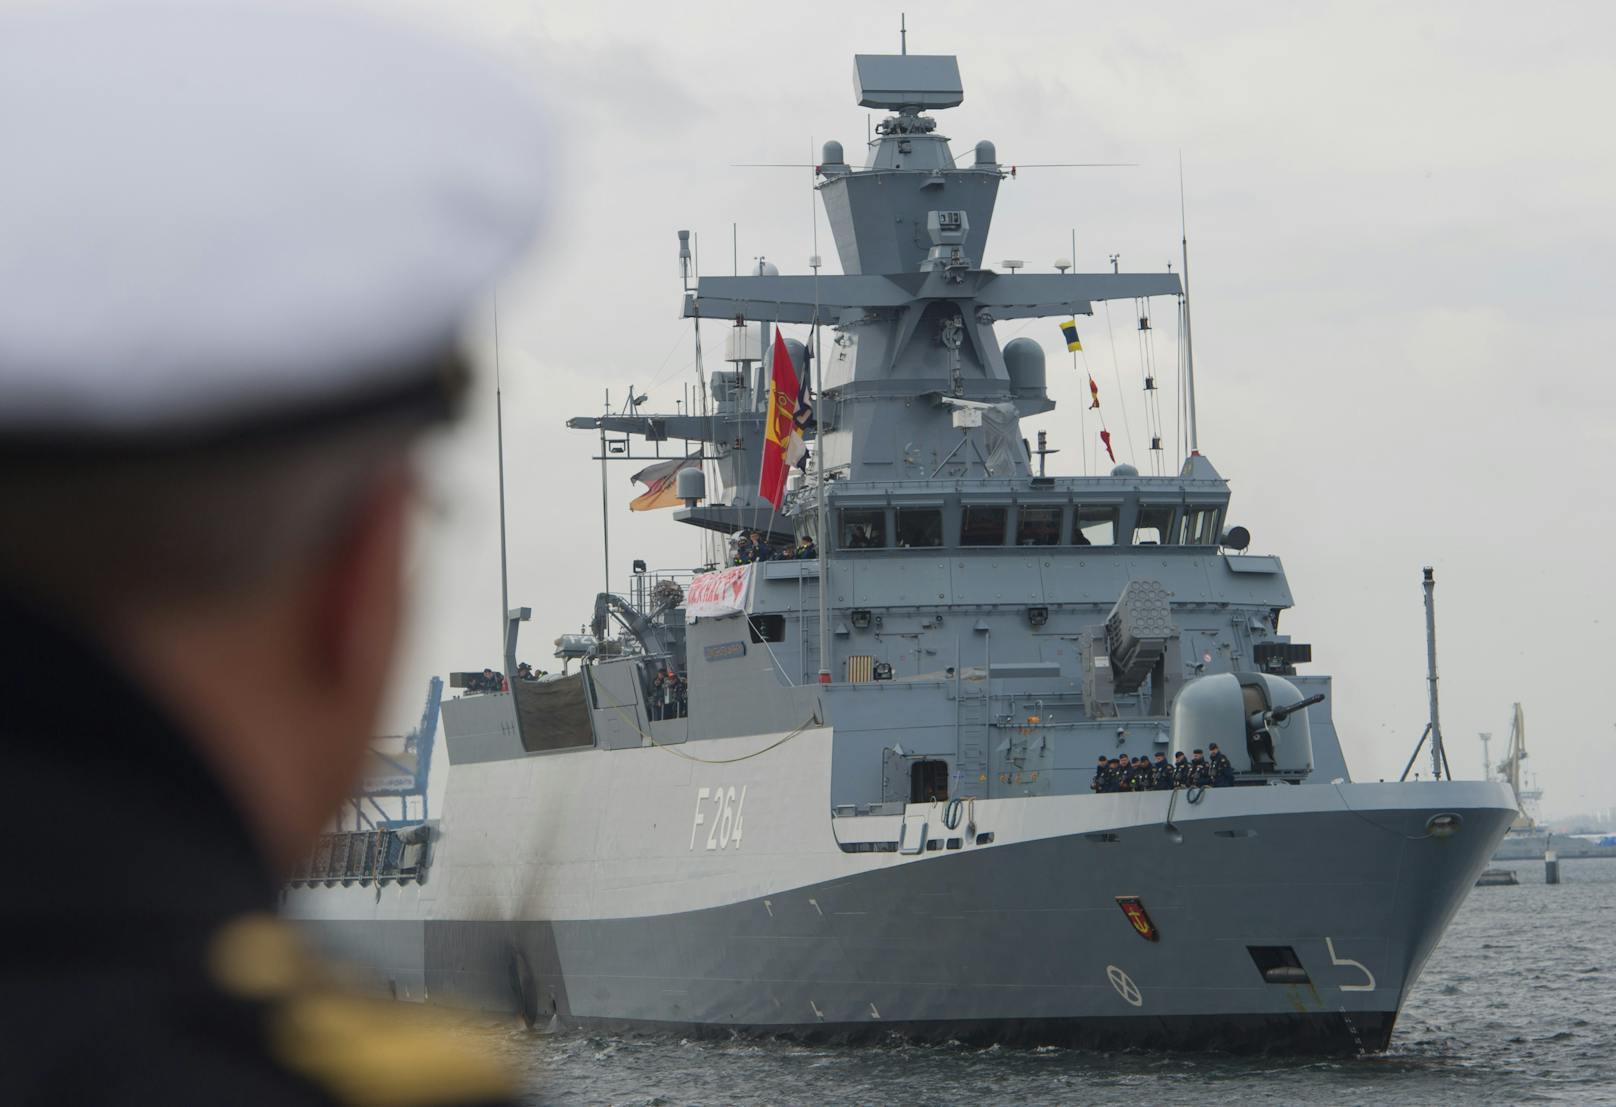 Archivbilder vom Einsatz der EU Naval Force im Mittelmeer, aufgenommen 2015 bis 2016